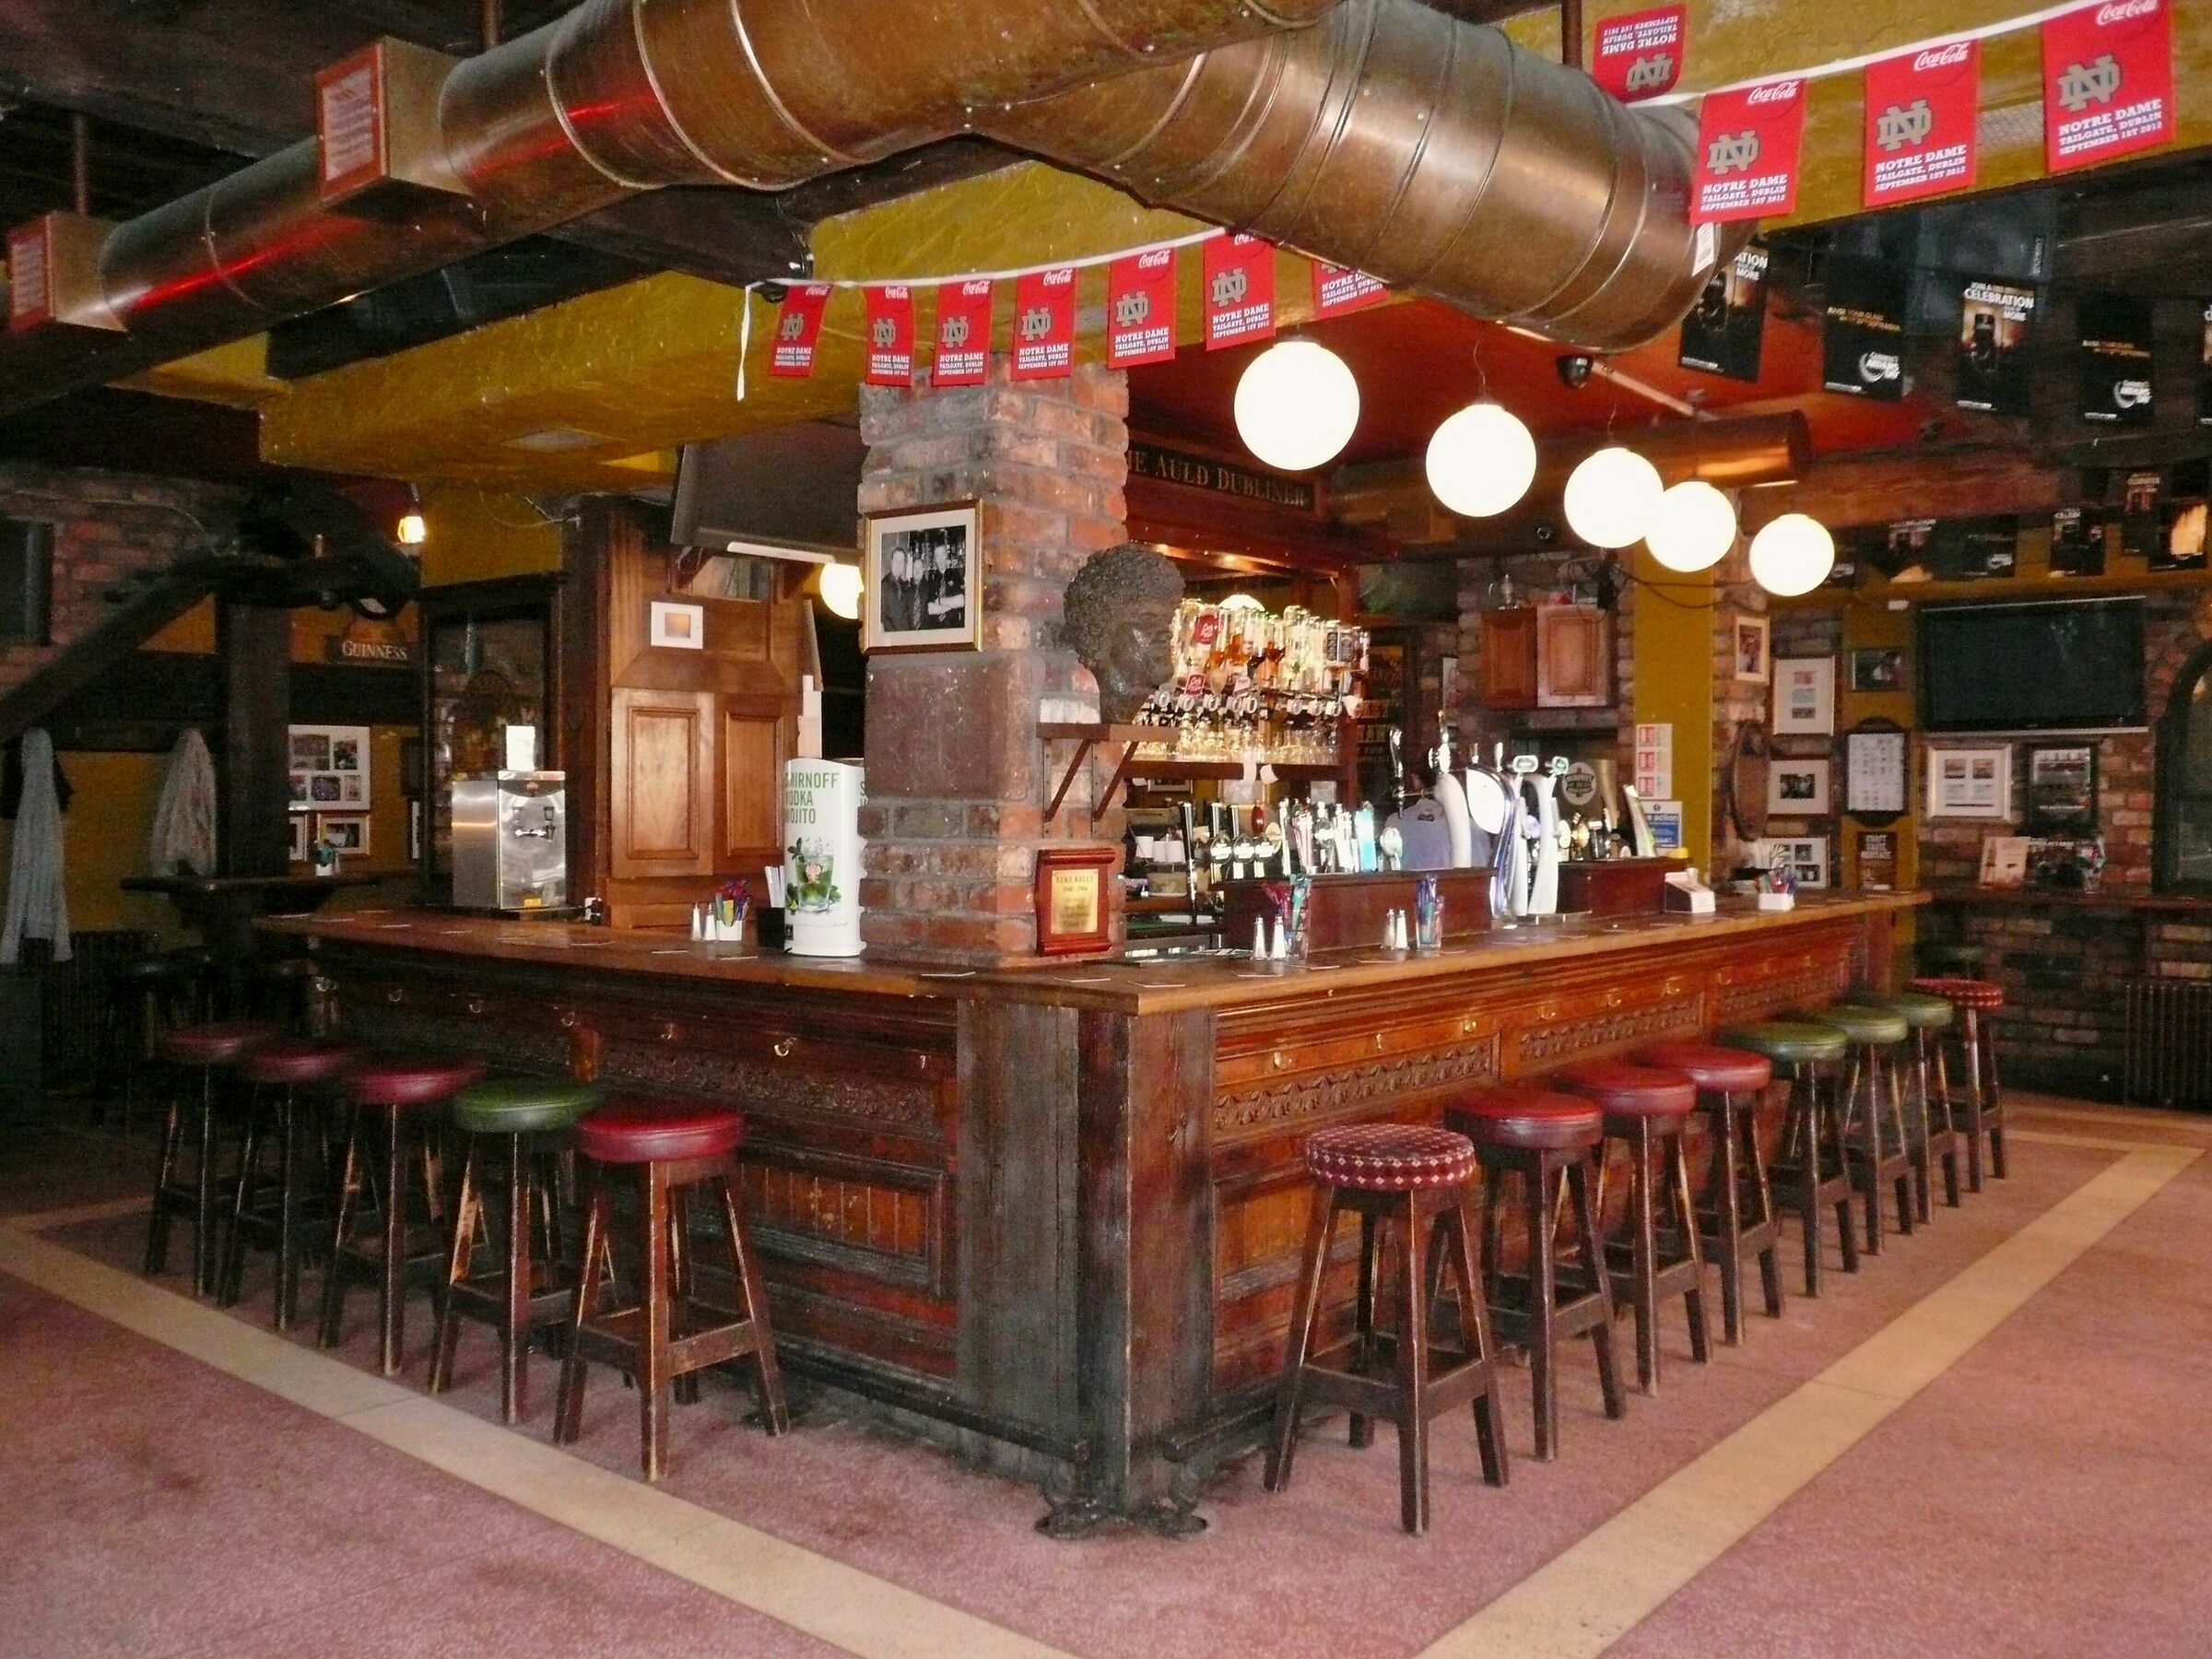 Dublin Neighborhood Temple Bar - "The Dubliner"...